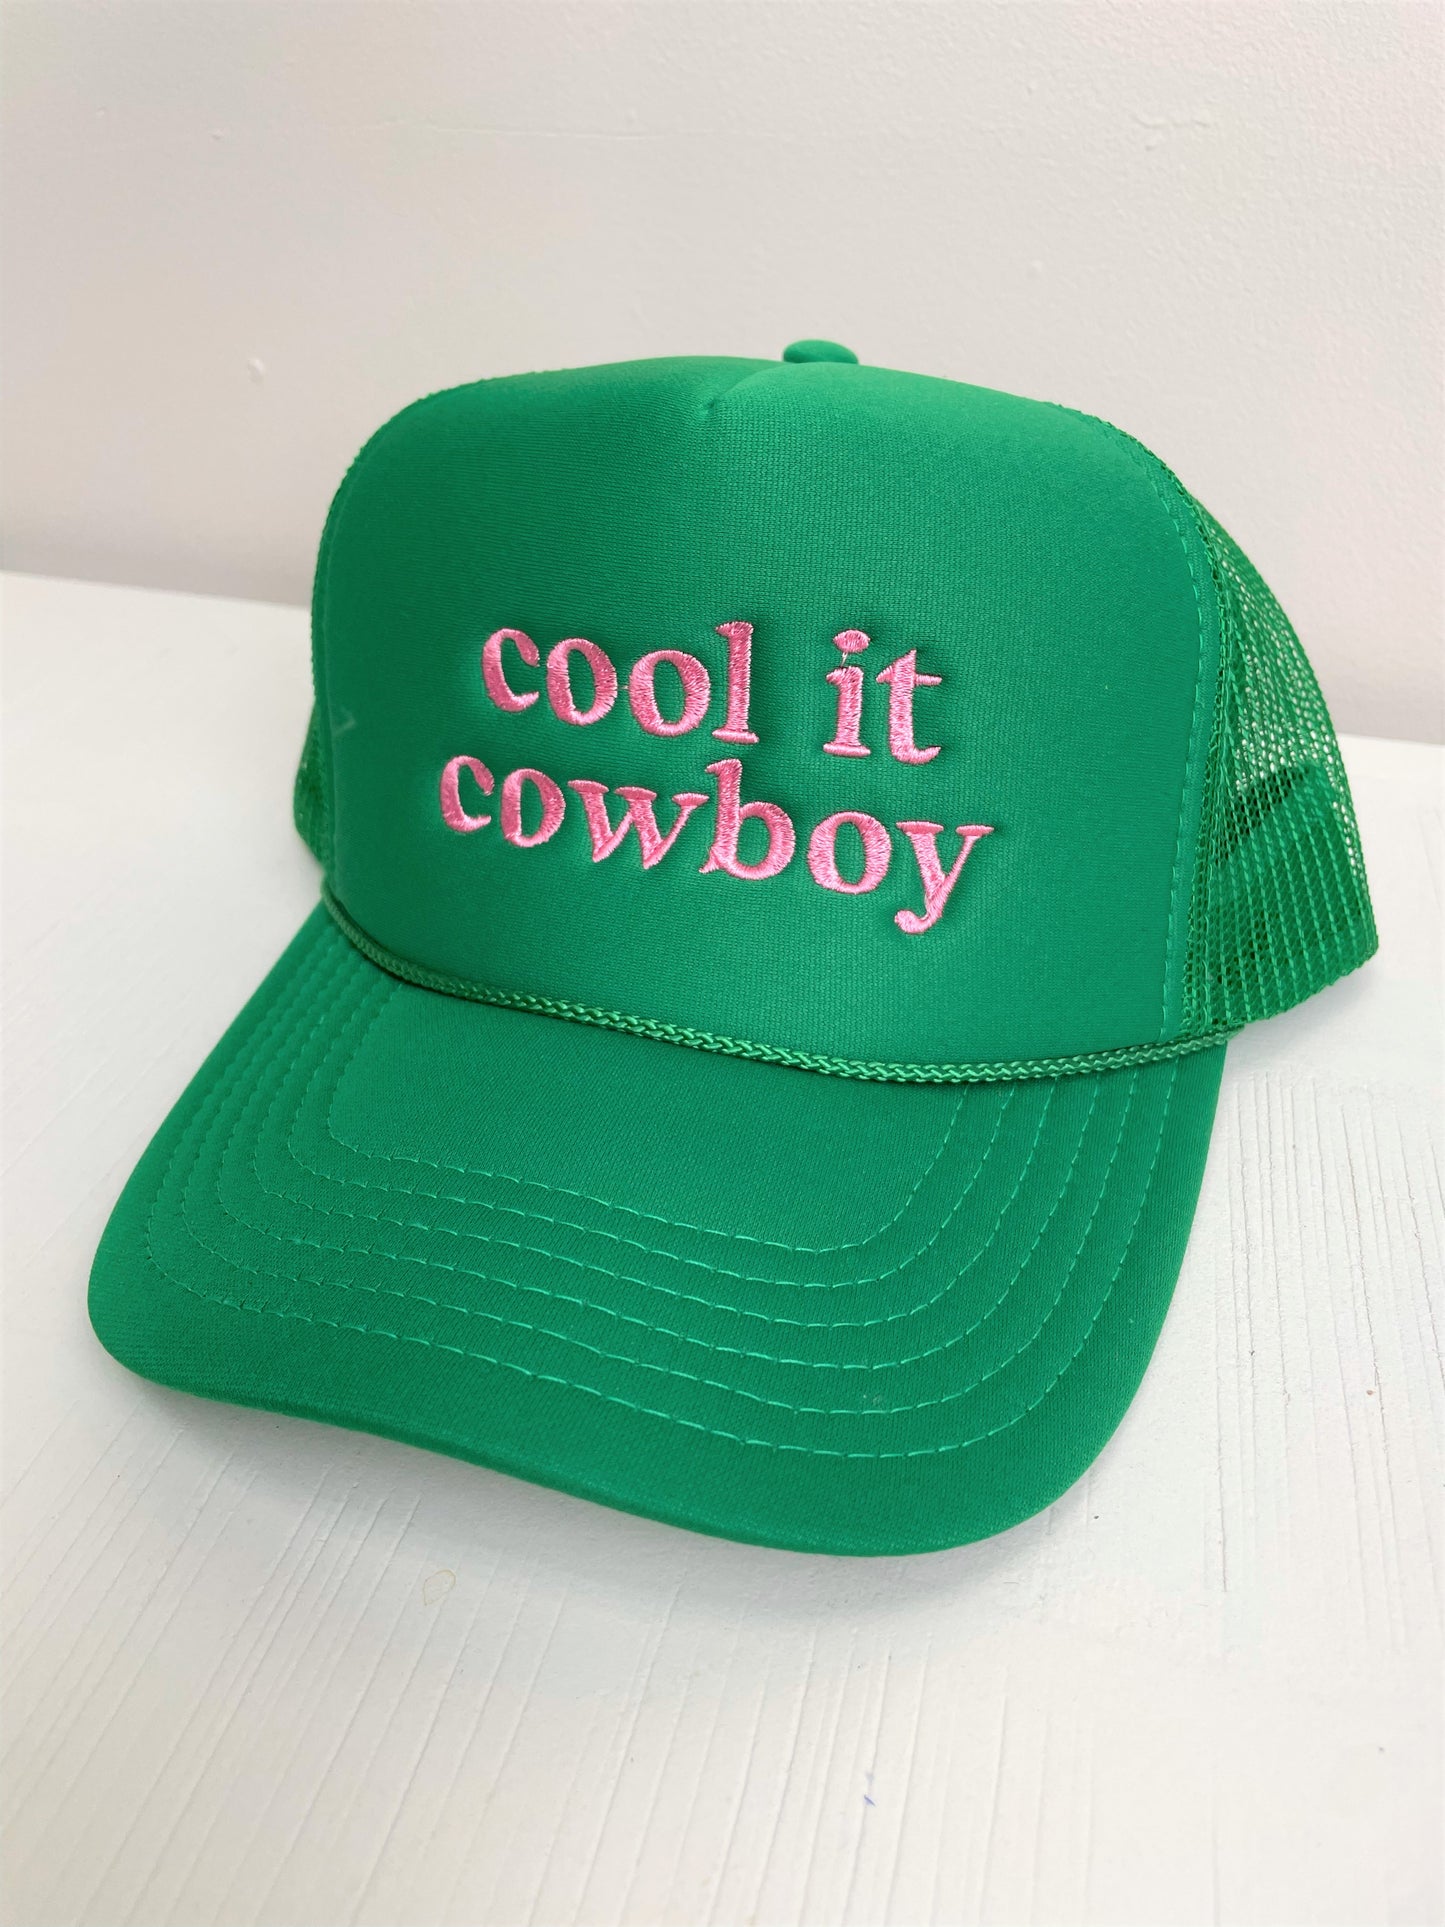 Cool It Cowboy Green Cap